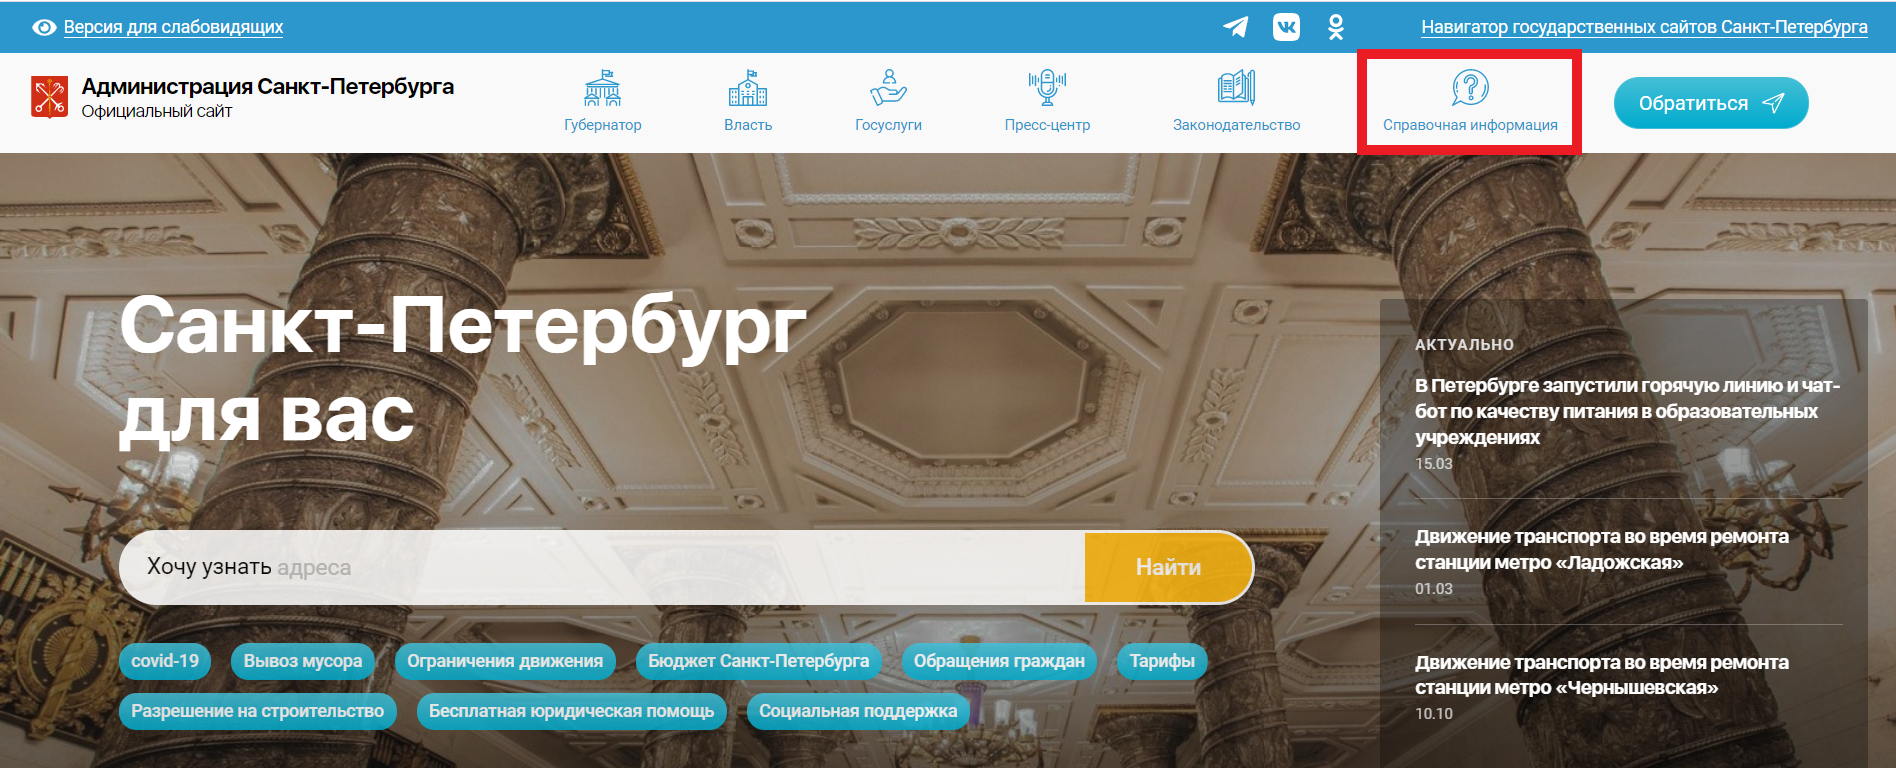 сайт администрации Санкт-Петербурга